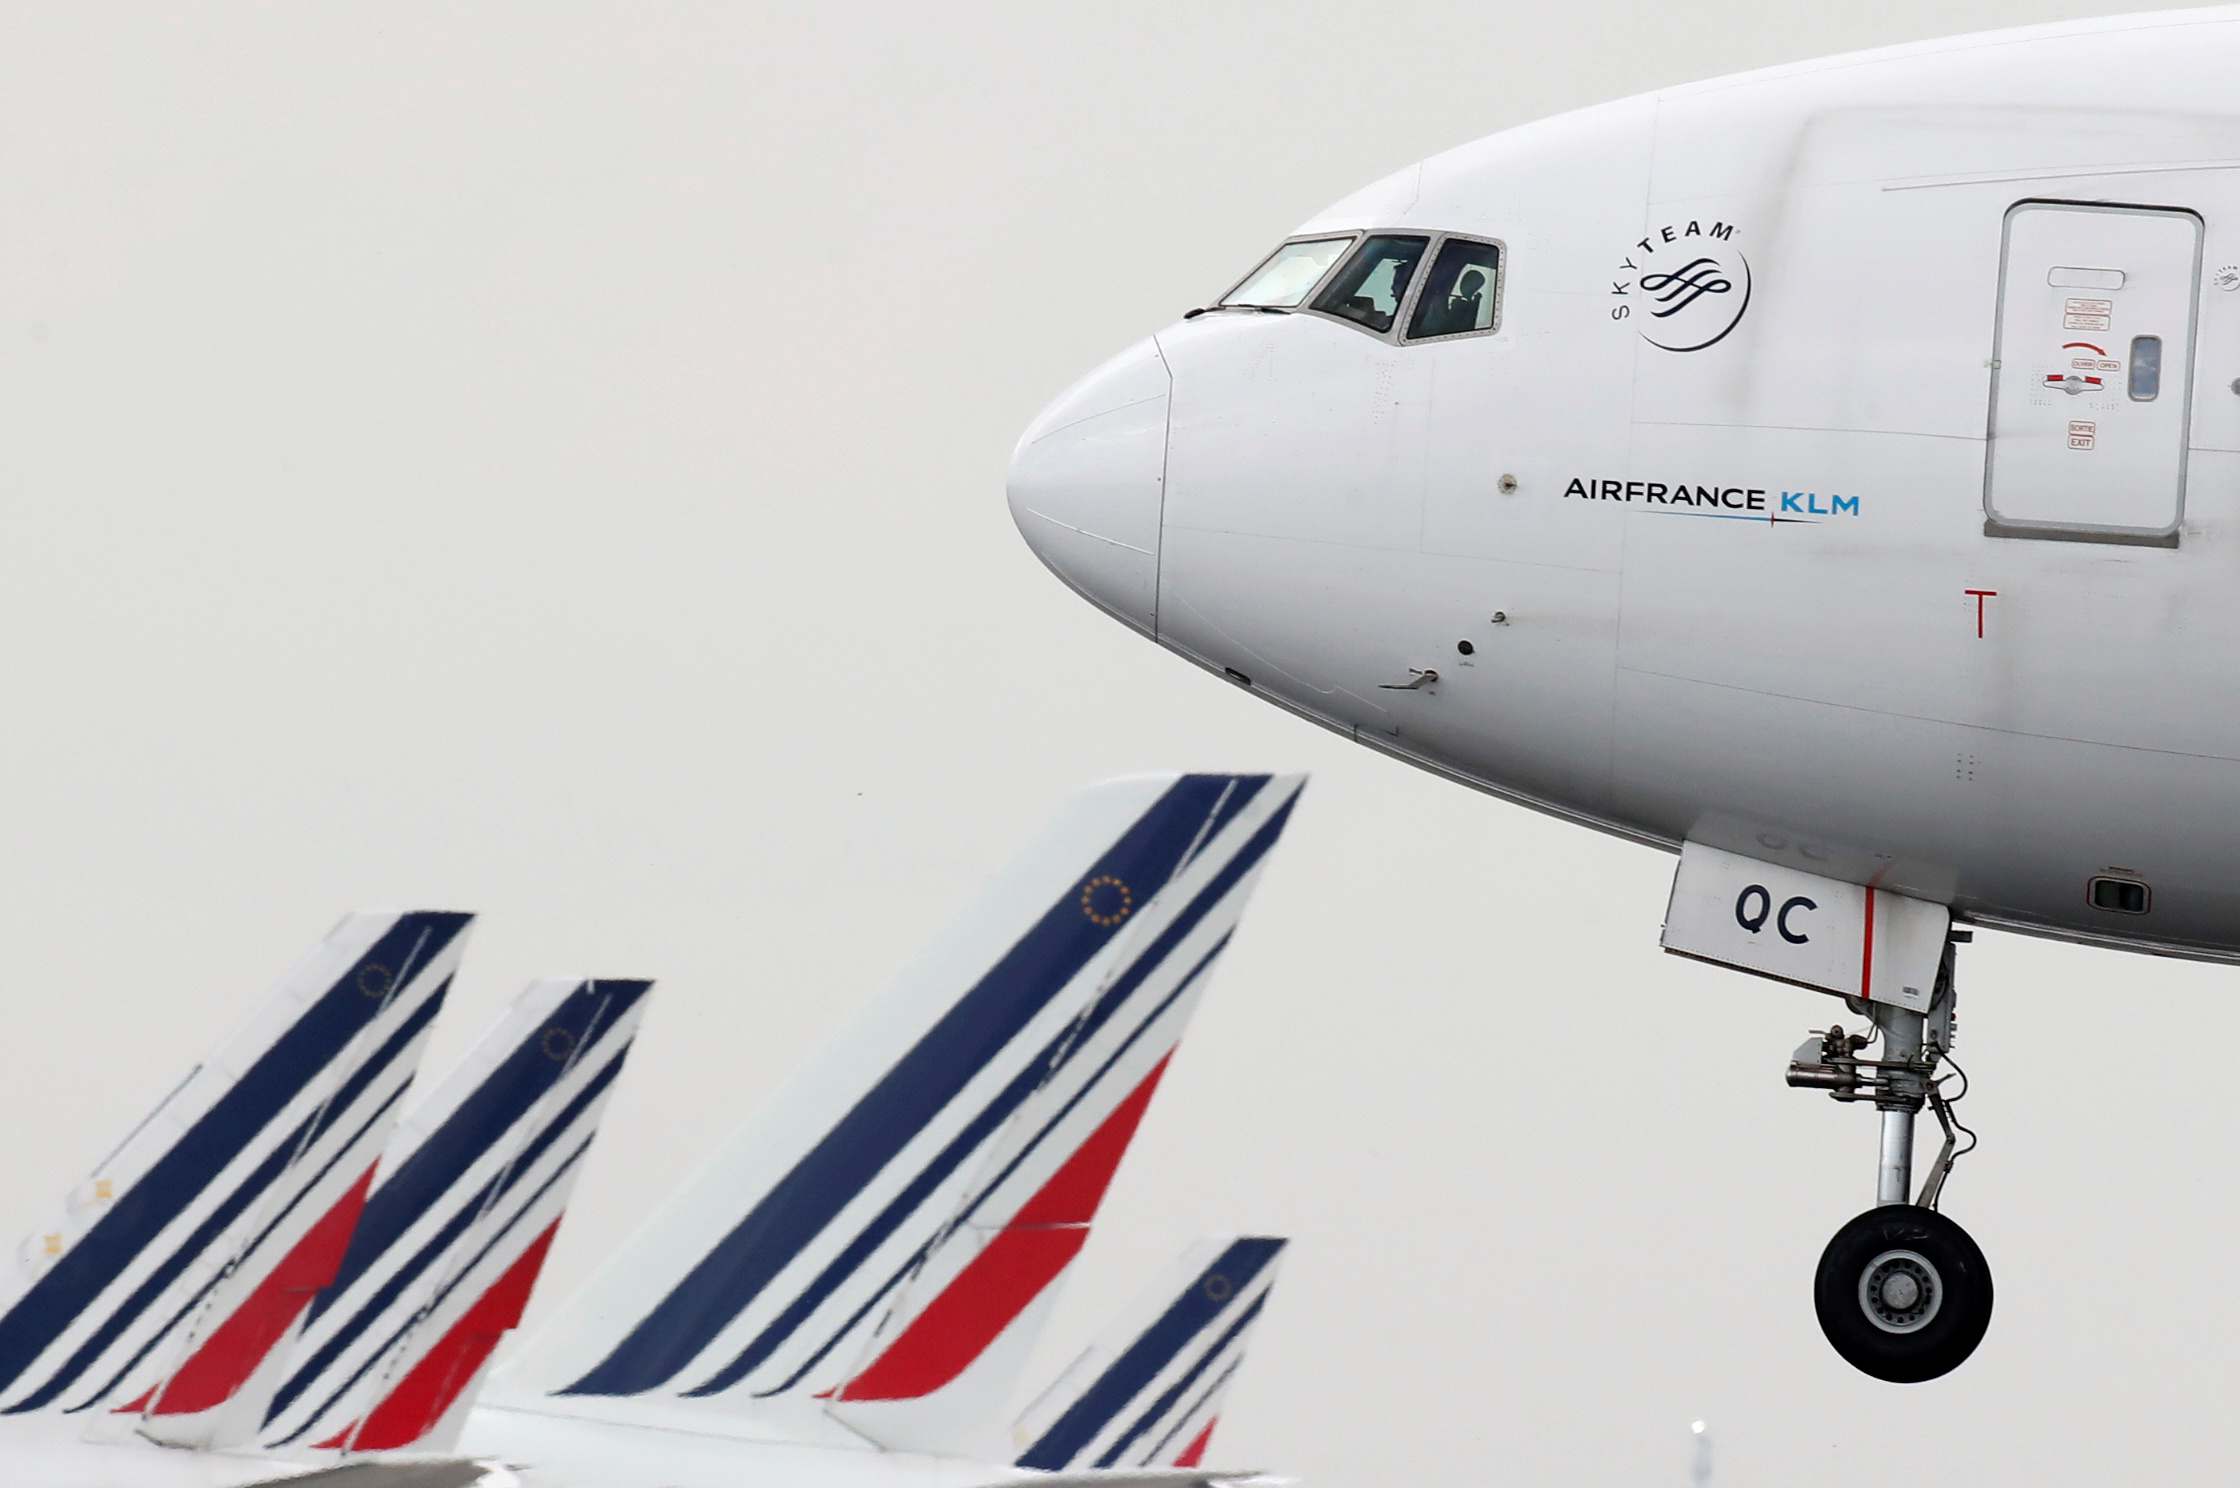 Le vol Air France AF011 commence à parler : pas de problème sur le Boeing